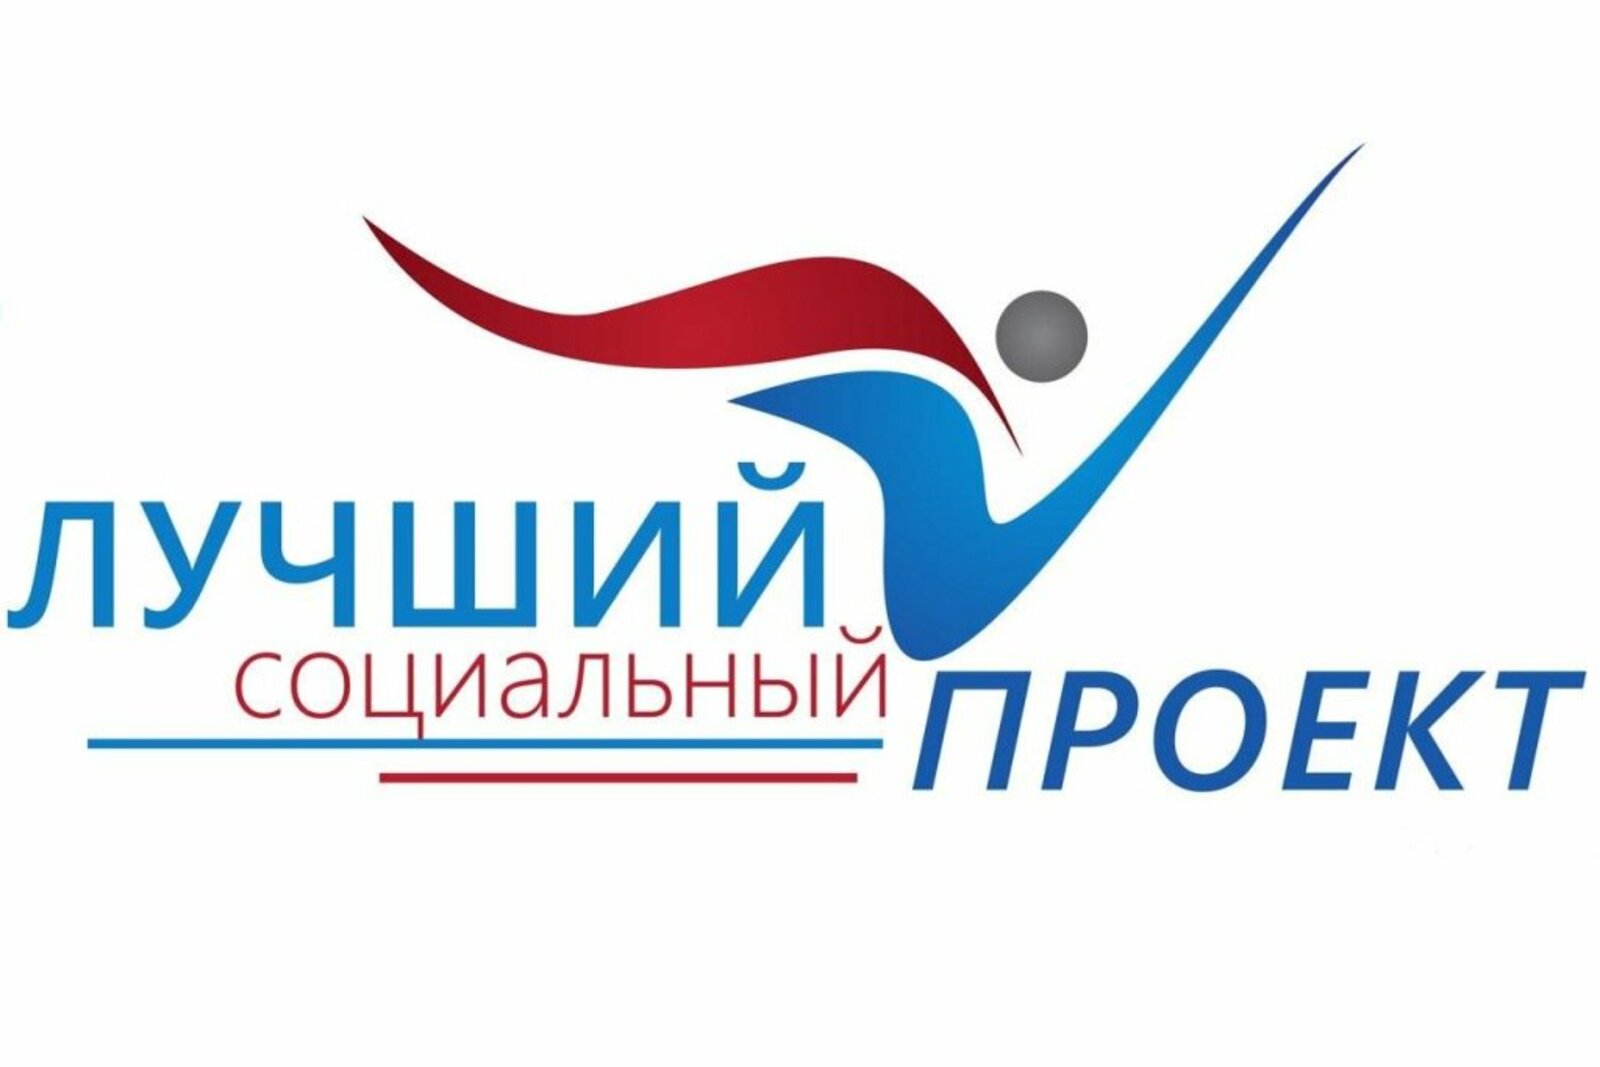 Всероссийский конкурс «Лучший социальный проект года»